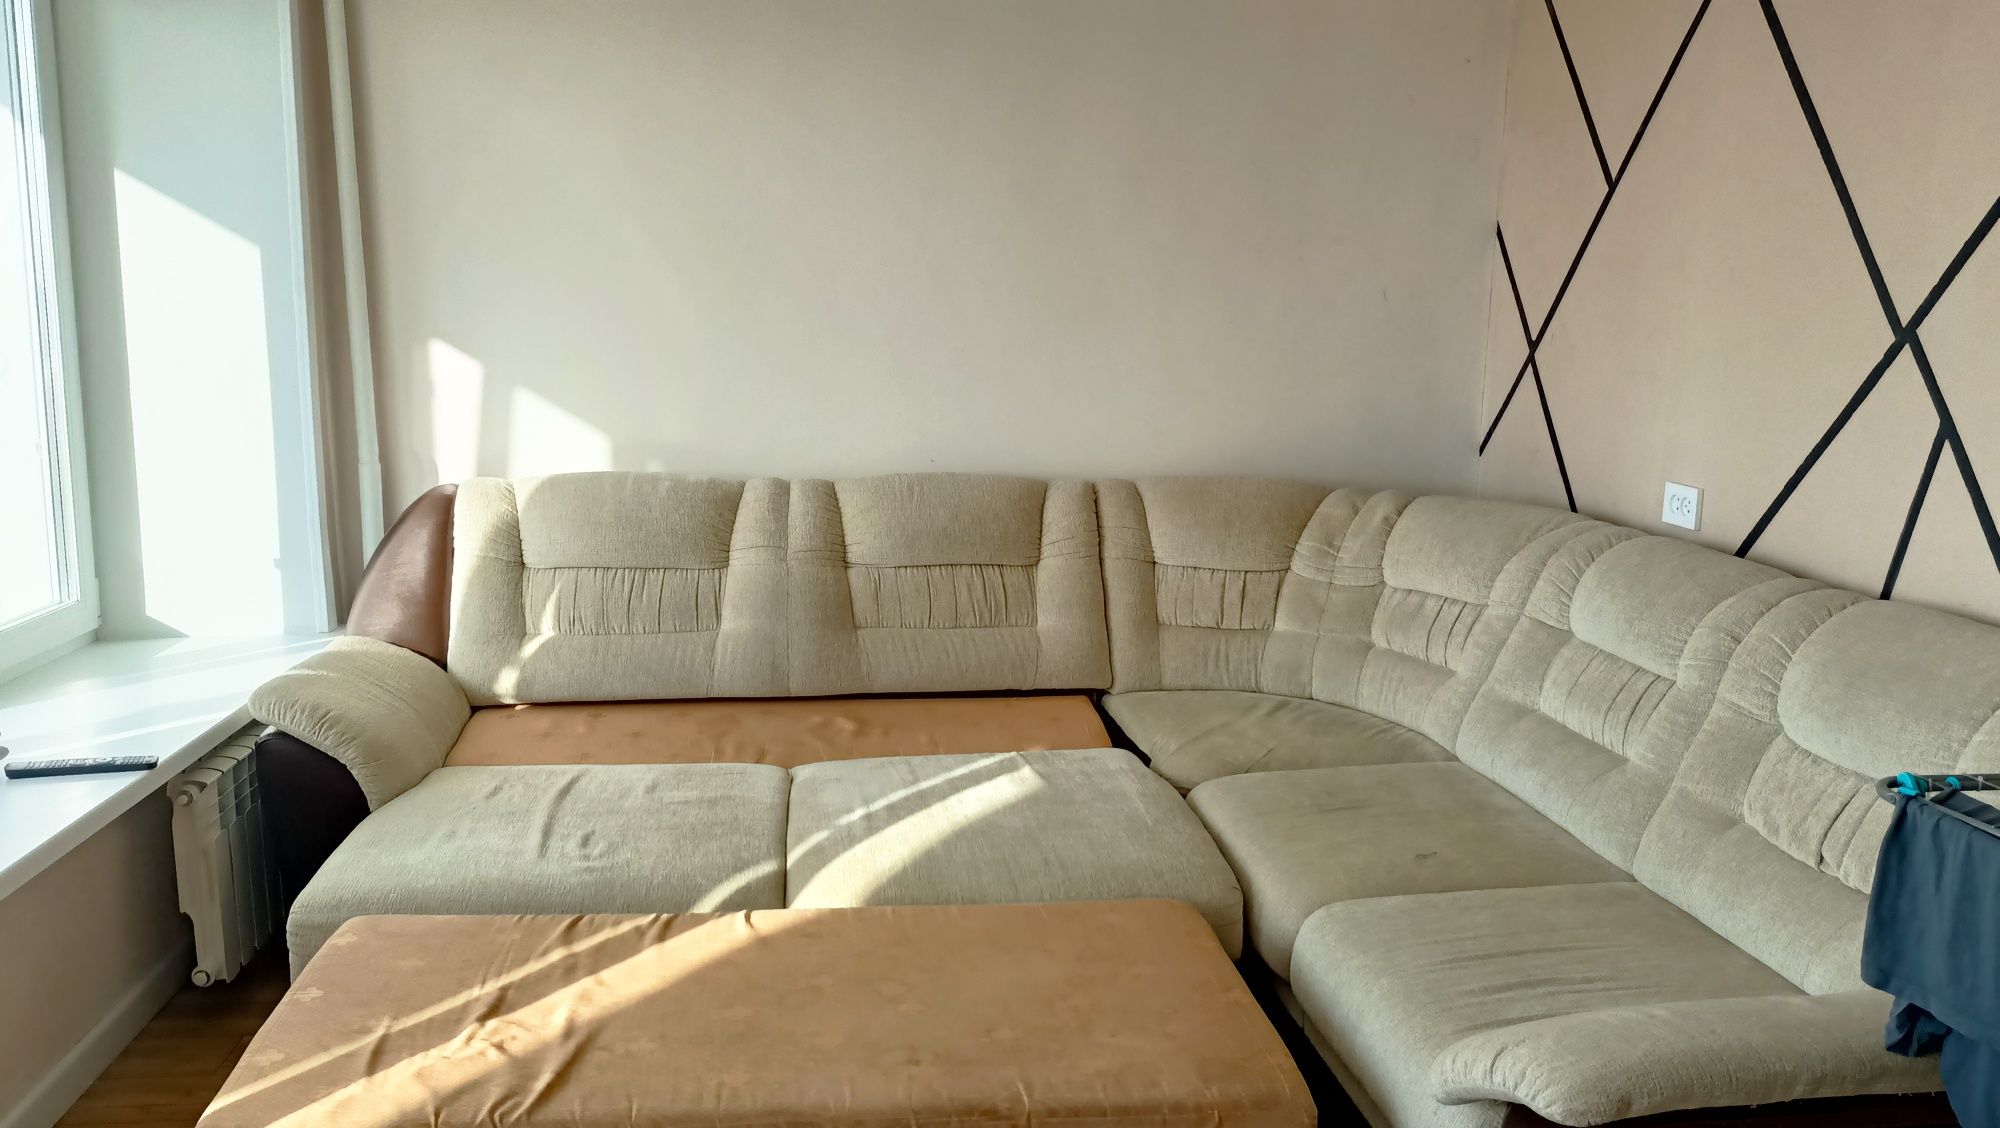 Продам диван  с двумя вместимыми ящиками для хранения белья